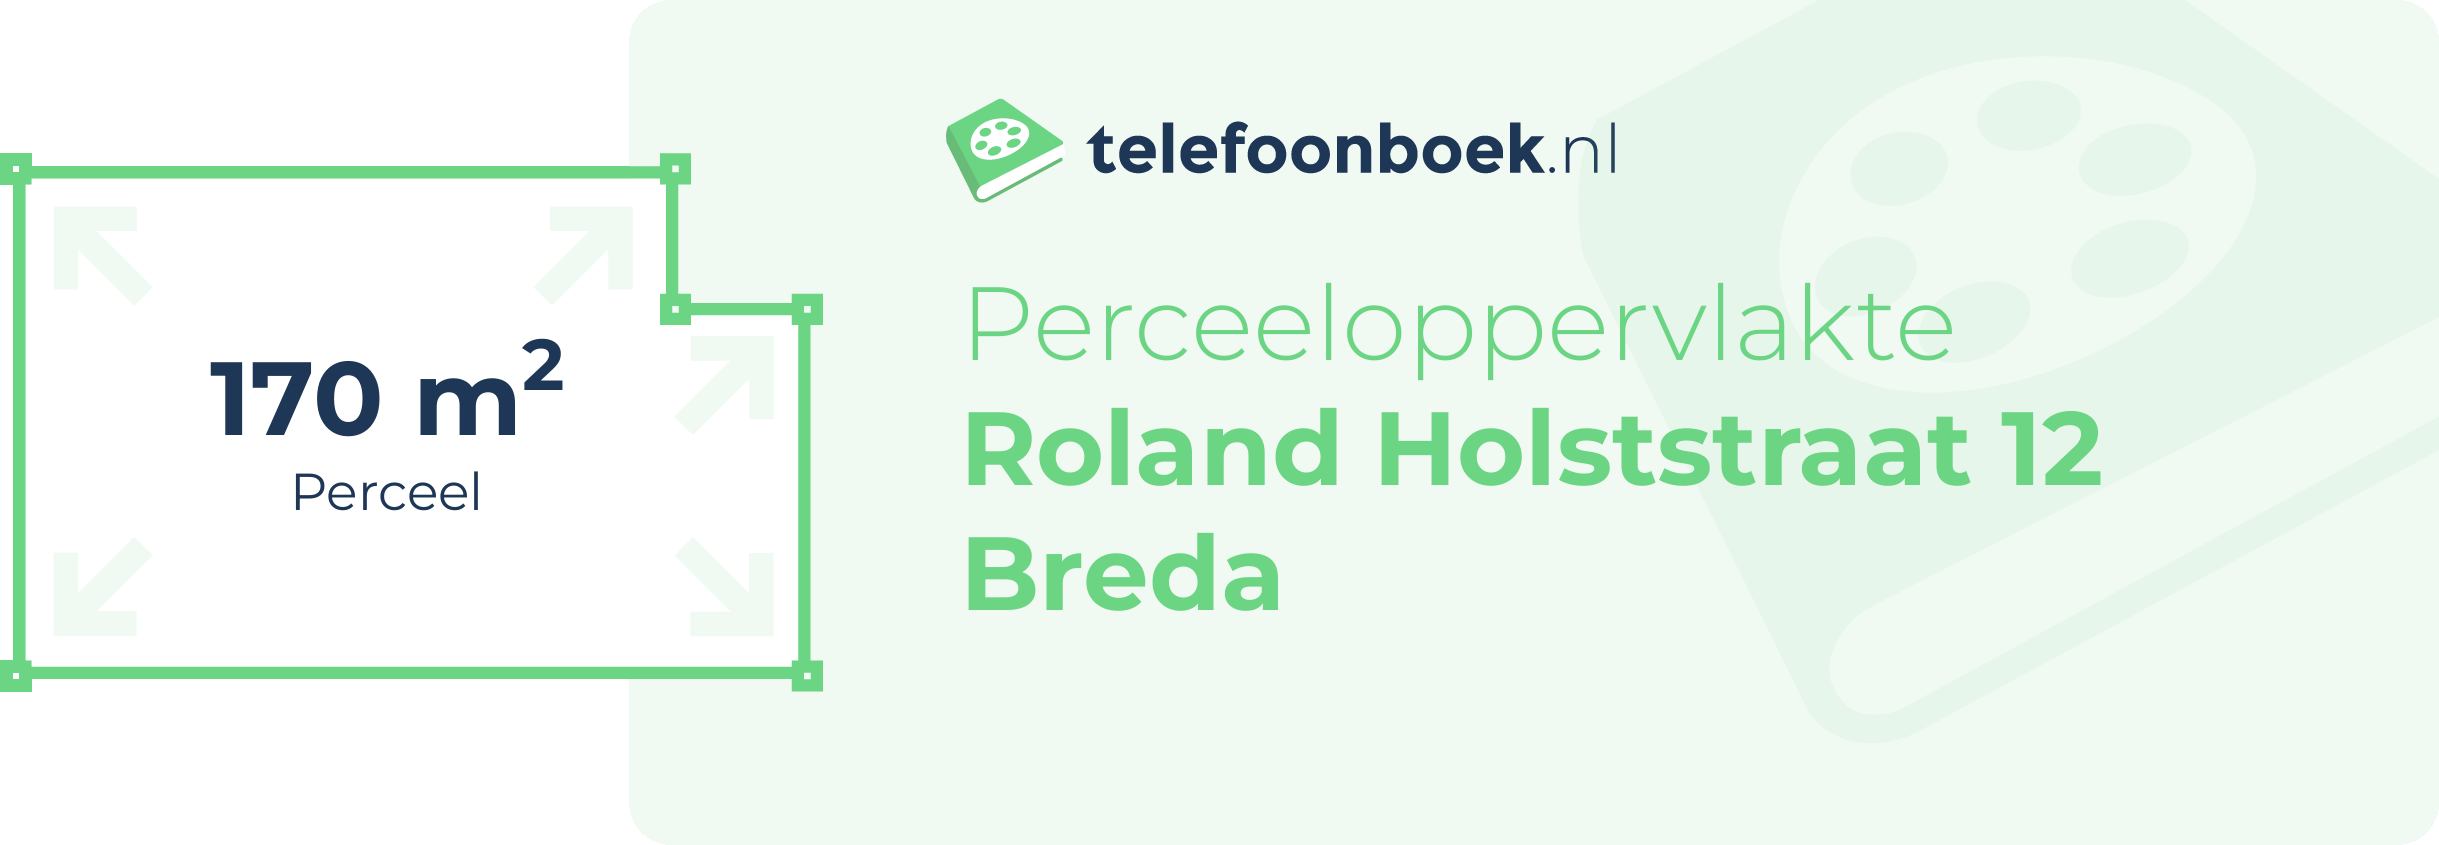 Perceeloppervlakte Roland Holststraat 12 Breda